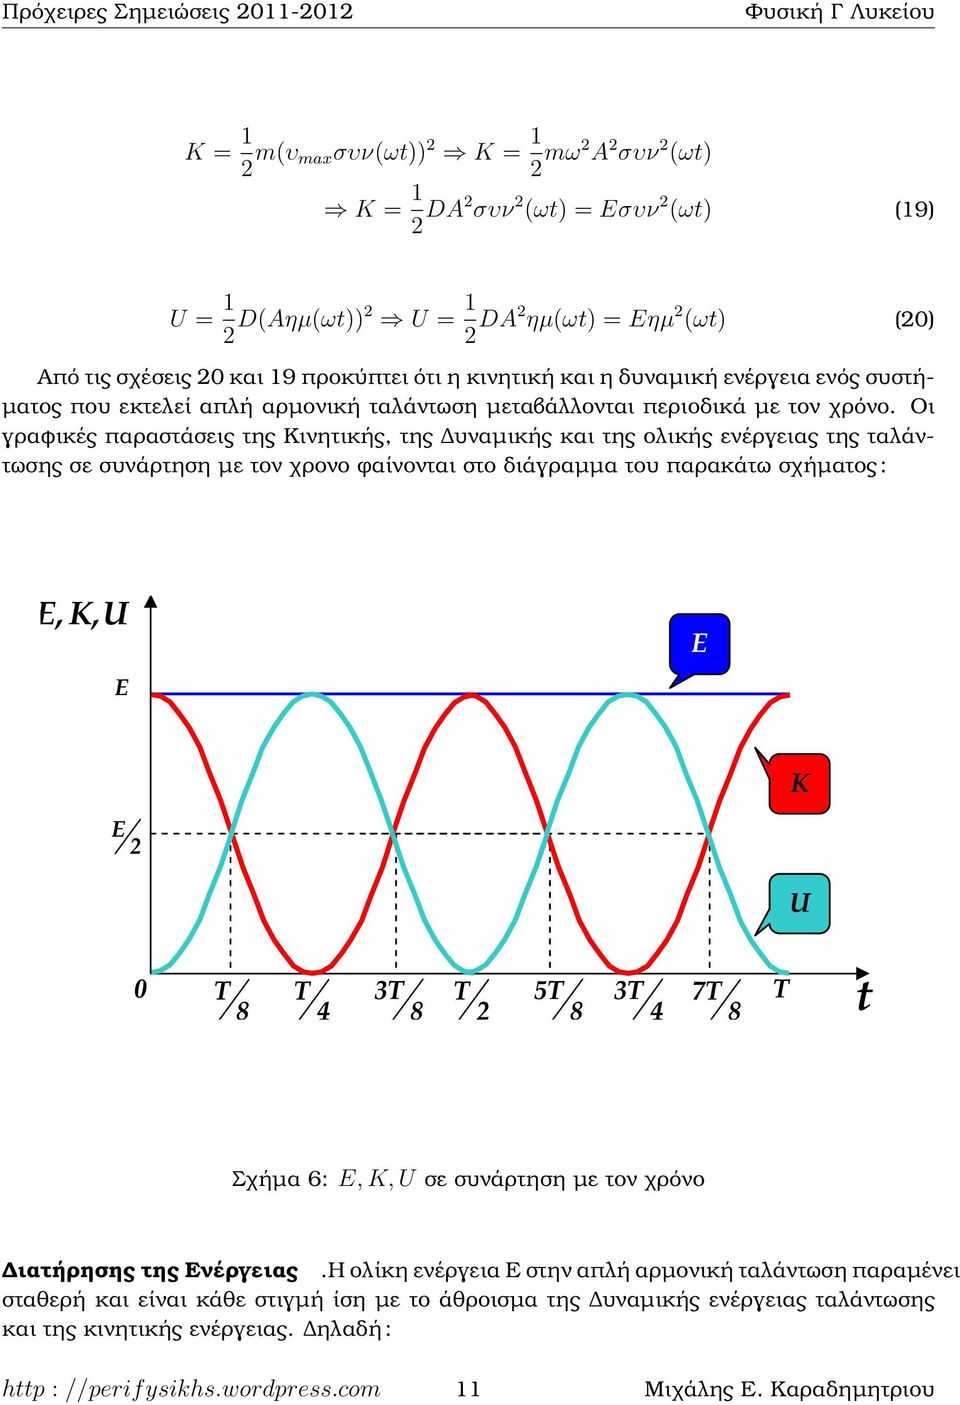 Οι γραφικές παραστάσεις της Κινητικής, της υναµικής και της ολικής ενέργειας της ταλάντωσης σε συνάρτηση µε τον χρονο ϕαίνονται στο διάγραµµα του παρακάτω σχήµατος : Σχήµα 6: E, K, U σε συνάρτηση µε